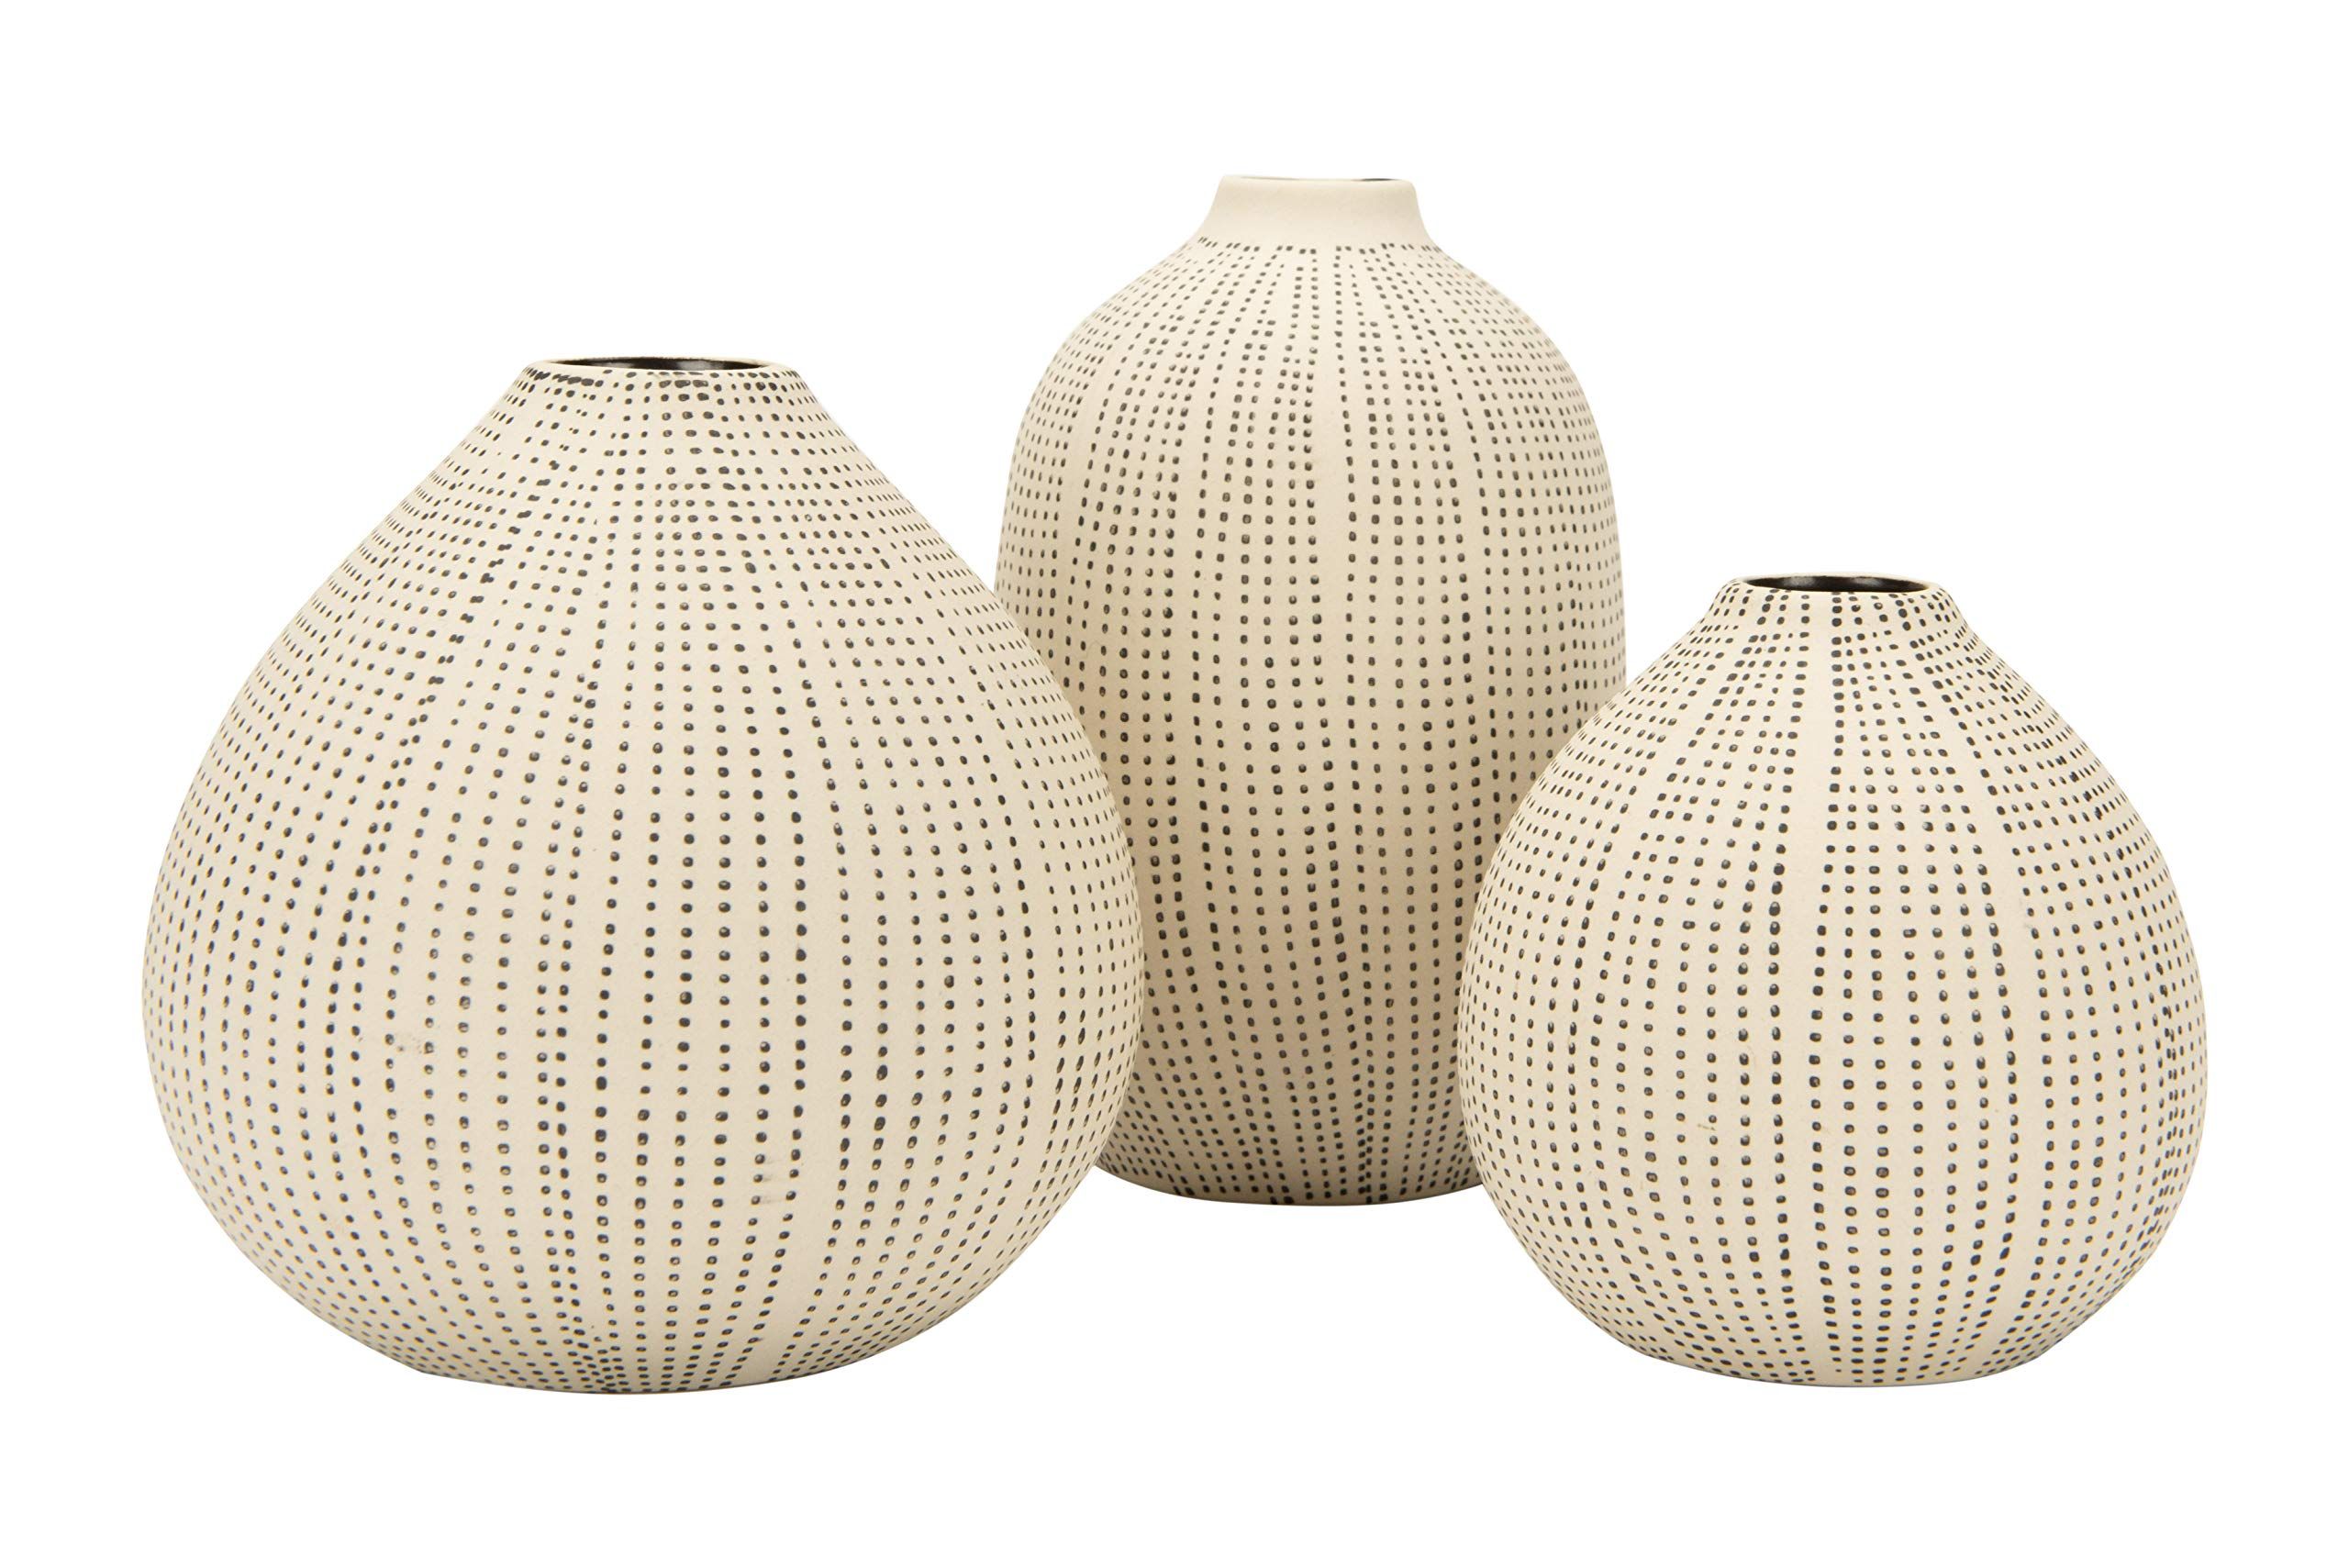 Creative Co-op DF0842 White Stoneware Textured Black Polka Dots (Set of 3 Sizes) Vase | Amazon (US)